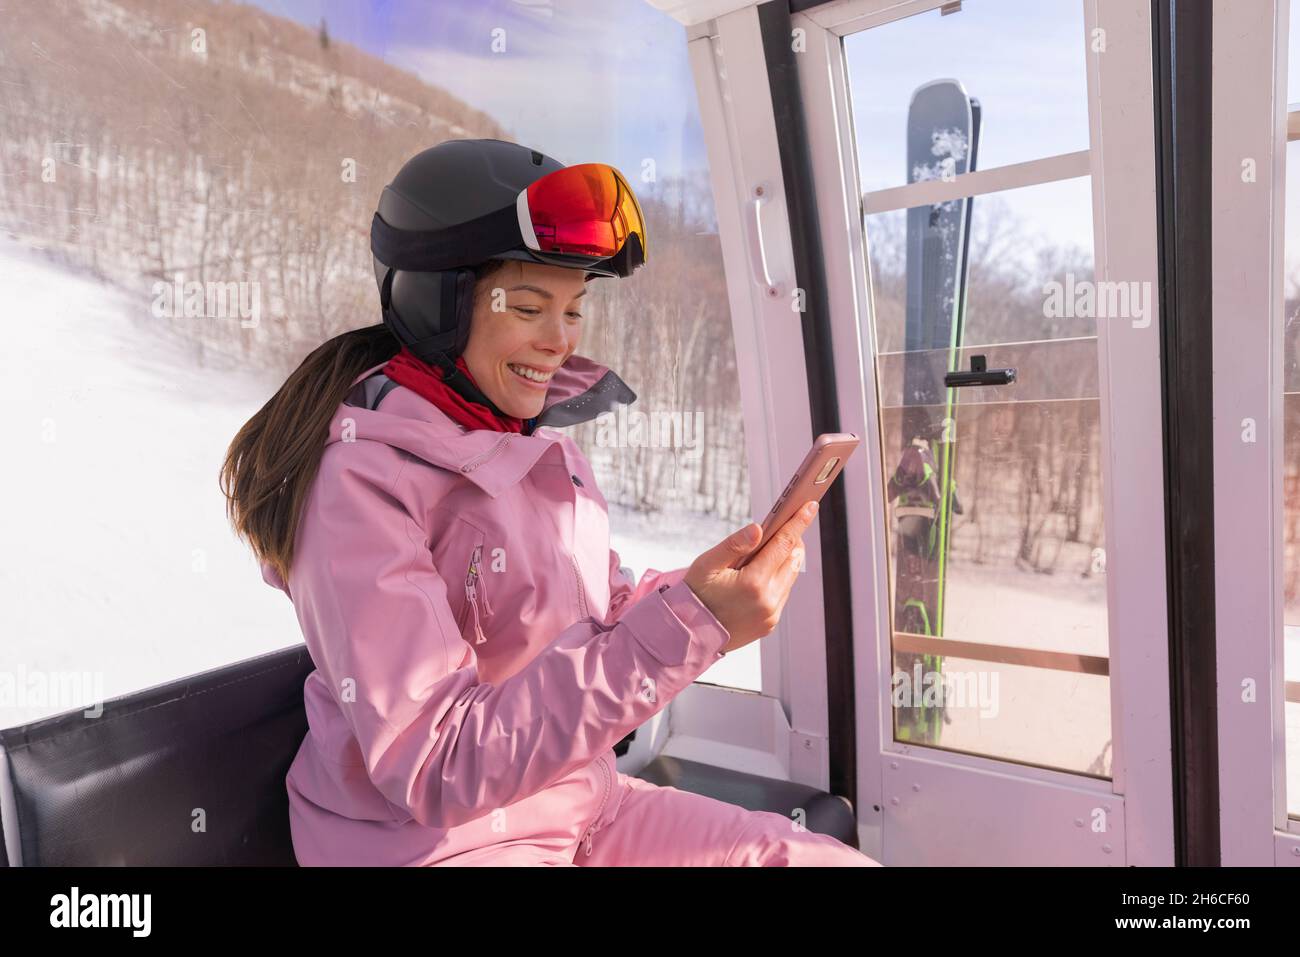 Skiurlaub - Frau Skifahrerin mit Telefon-App in Gondelbahn. Mädchen lächelnd Blick auf mobile Smartphone trägt Skibekleidung, Helm und Brille Stockfoto